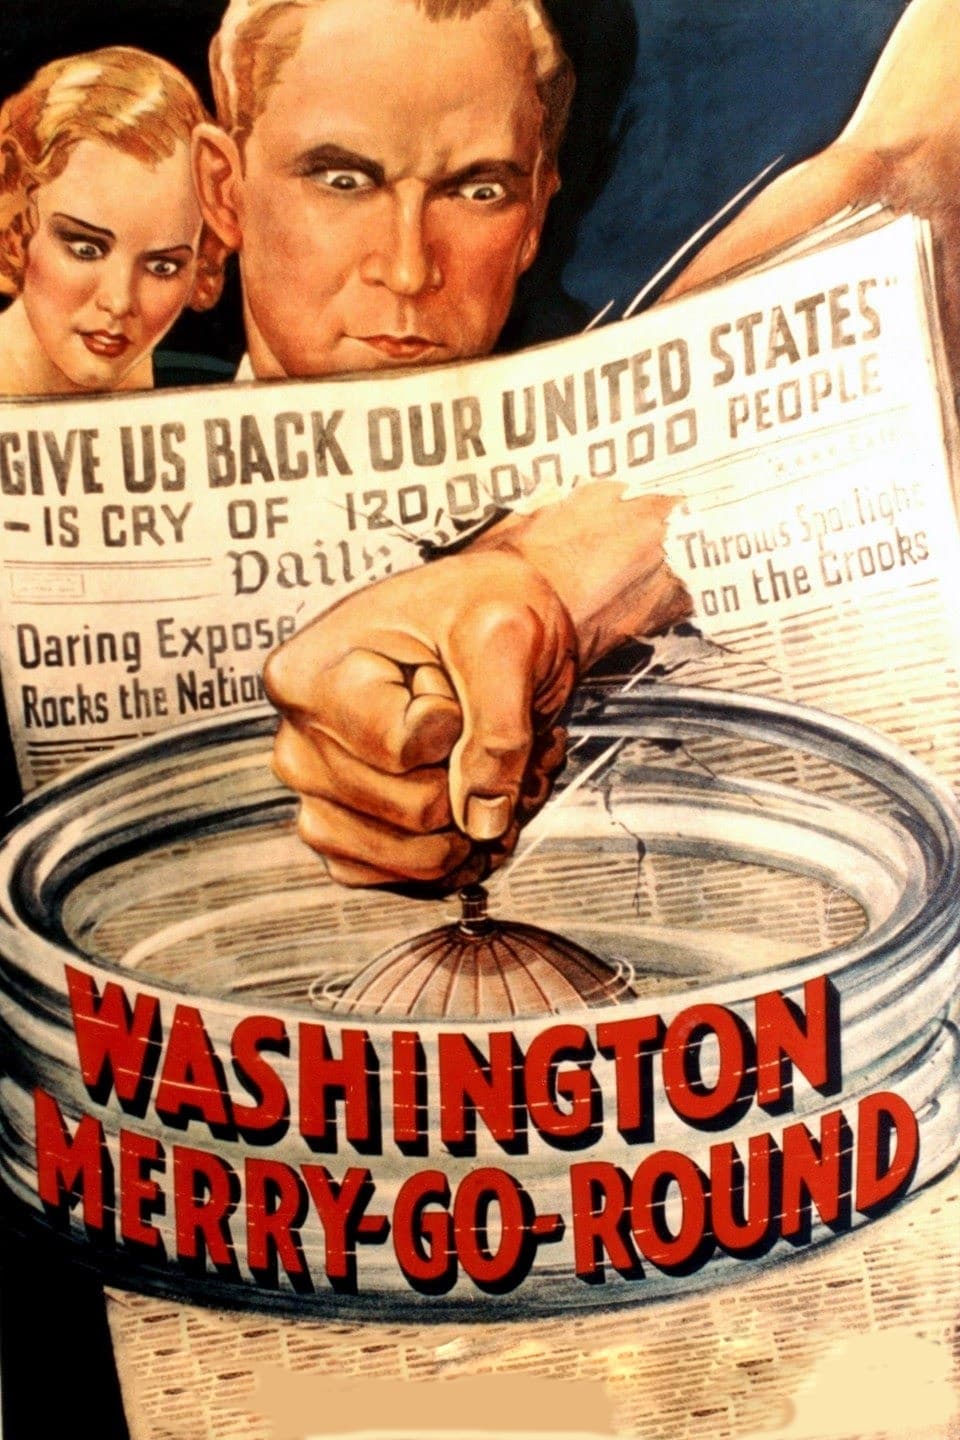 Washington Merry-Go-Round (1932)